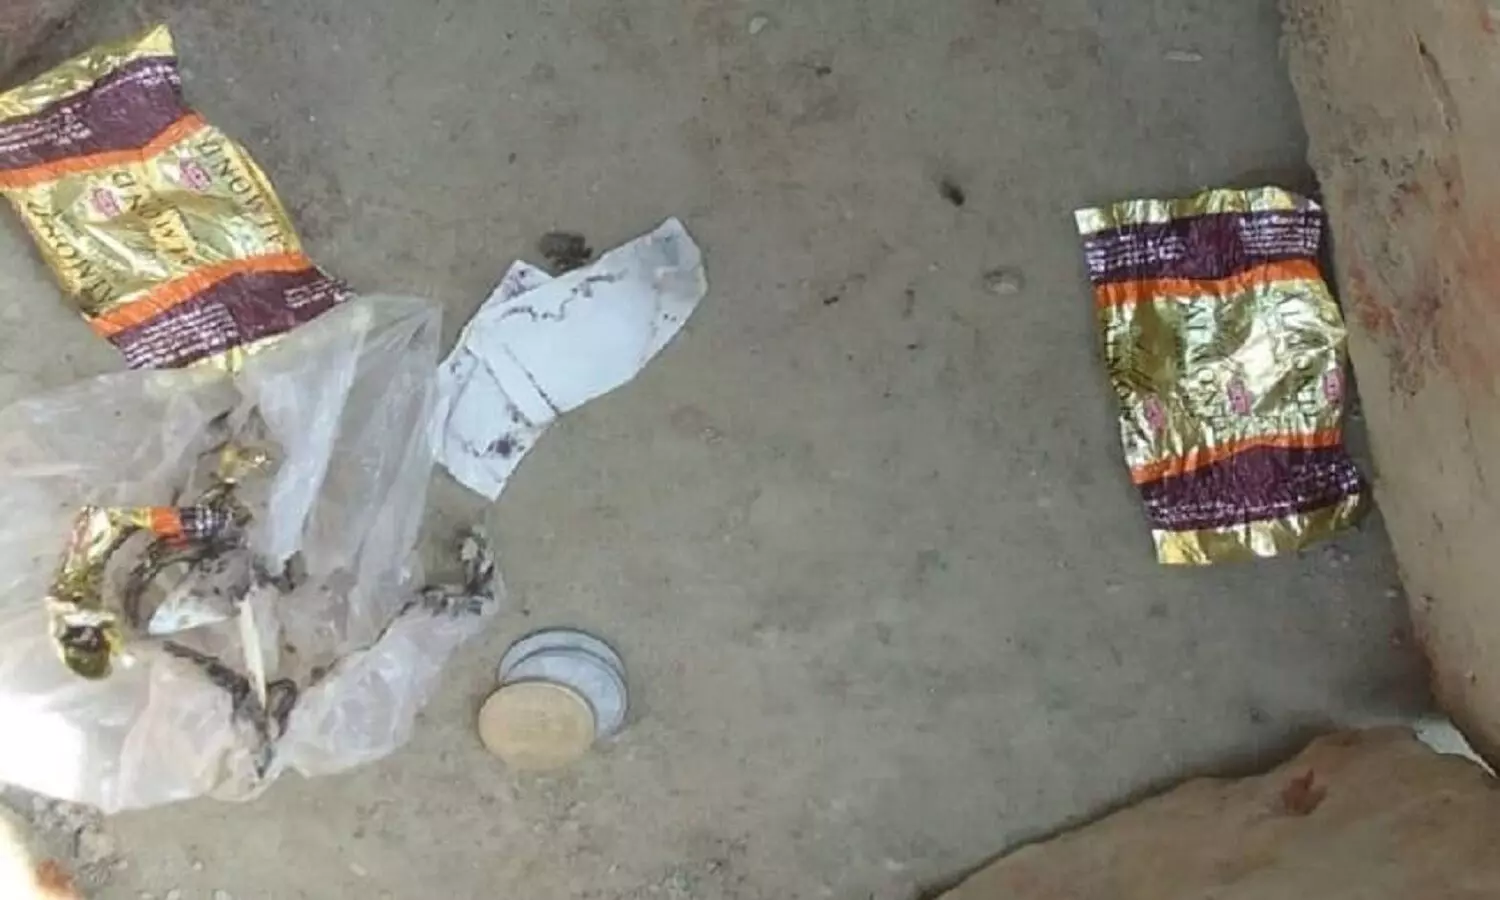 उत्तर प्रदेश: सड़क पर पड़ी मिली जहरीली टॉफी खाने से 2, 3 और 5 साल के चार बच्चों की मौत